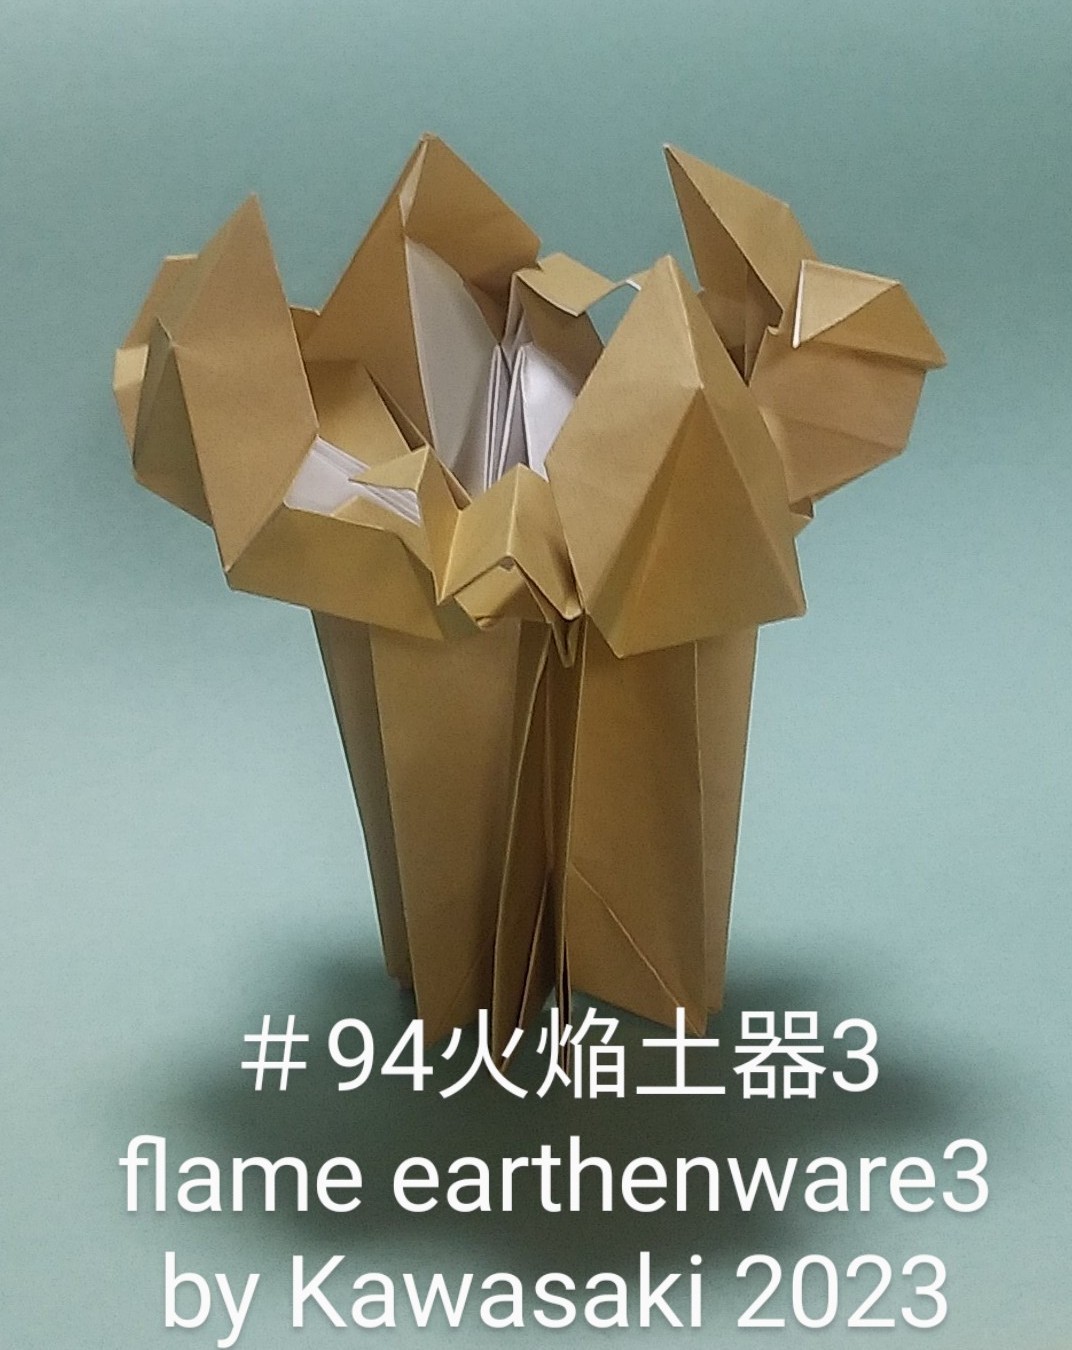 2023/10/08(Sun) 19:53「＃94火焔土器3 flame earthenware (作2023年10月8日19:38) 」川崎敏和 T.Kawasaki
（創作者 Author：川崎敏和 T.Kawasaki,　製作者 Folder：川崎敏和 T.Kawasaki ,　出典 Source：折り図無し no diagrm）
 火焔土器を実物に近づけました。ただ、折り紙としてはスッキリしている＃90で十分かと。